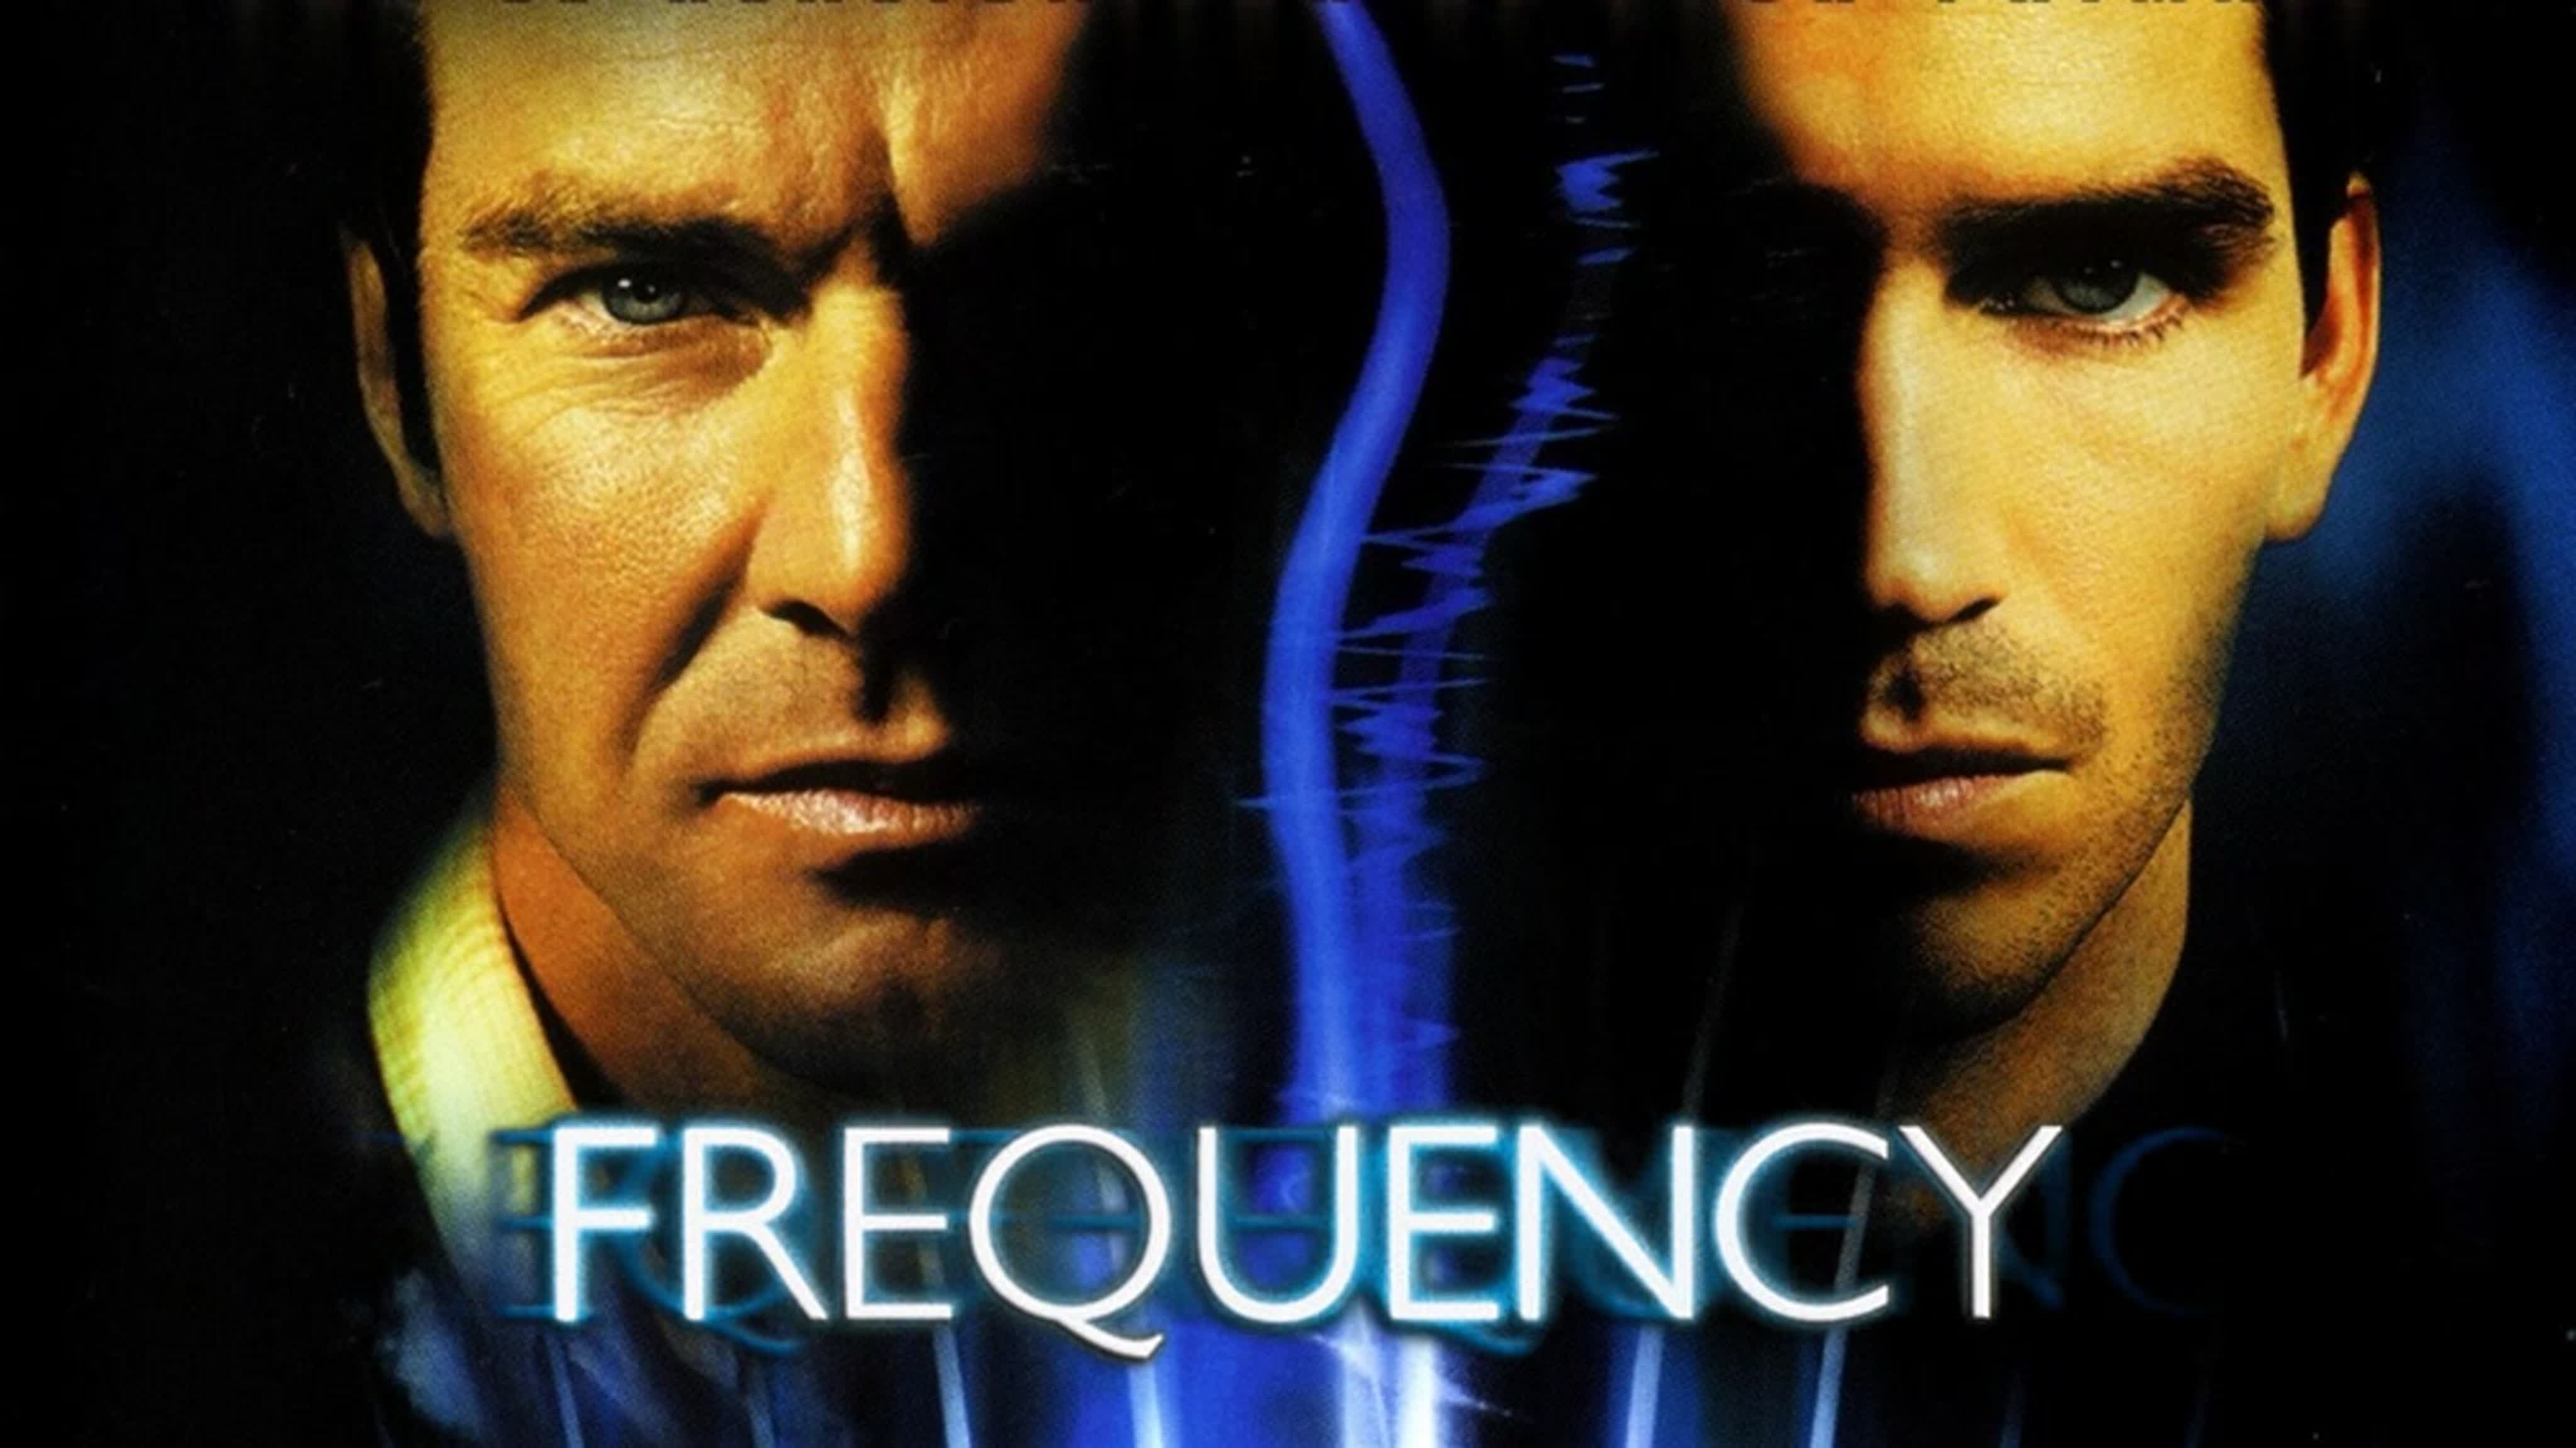 Радиоволна| Frequency, 2000